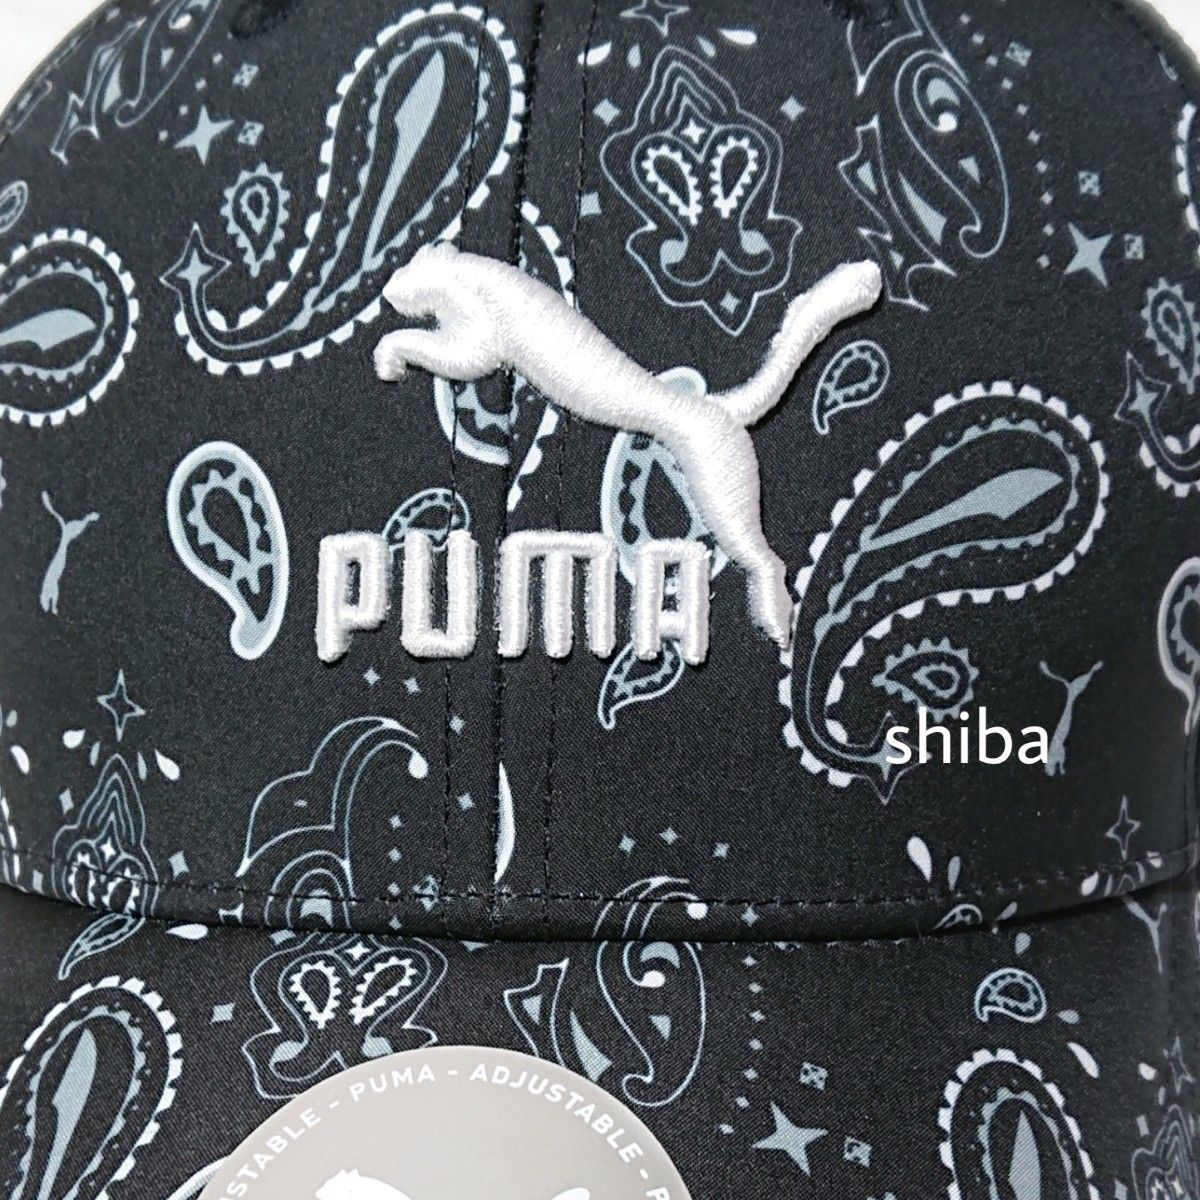 PUMA プーマ 正規品 キャップ 帽子 キャップ ペイズリー 柄 ブラック 黒 ホワイト 白 ユニセックス フリーサイズ